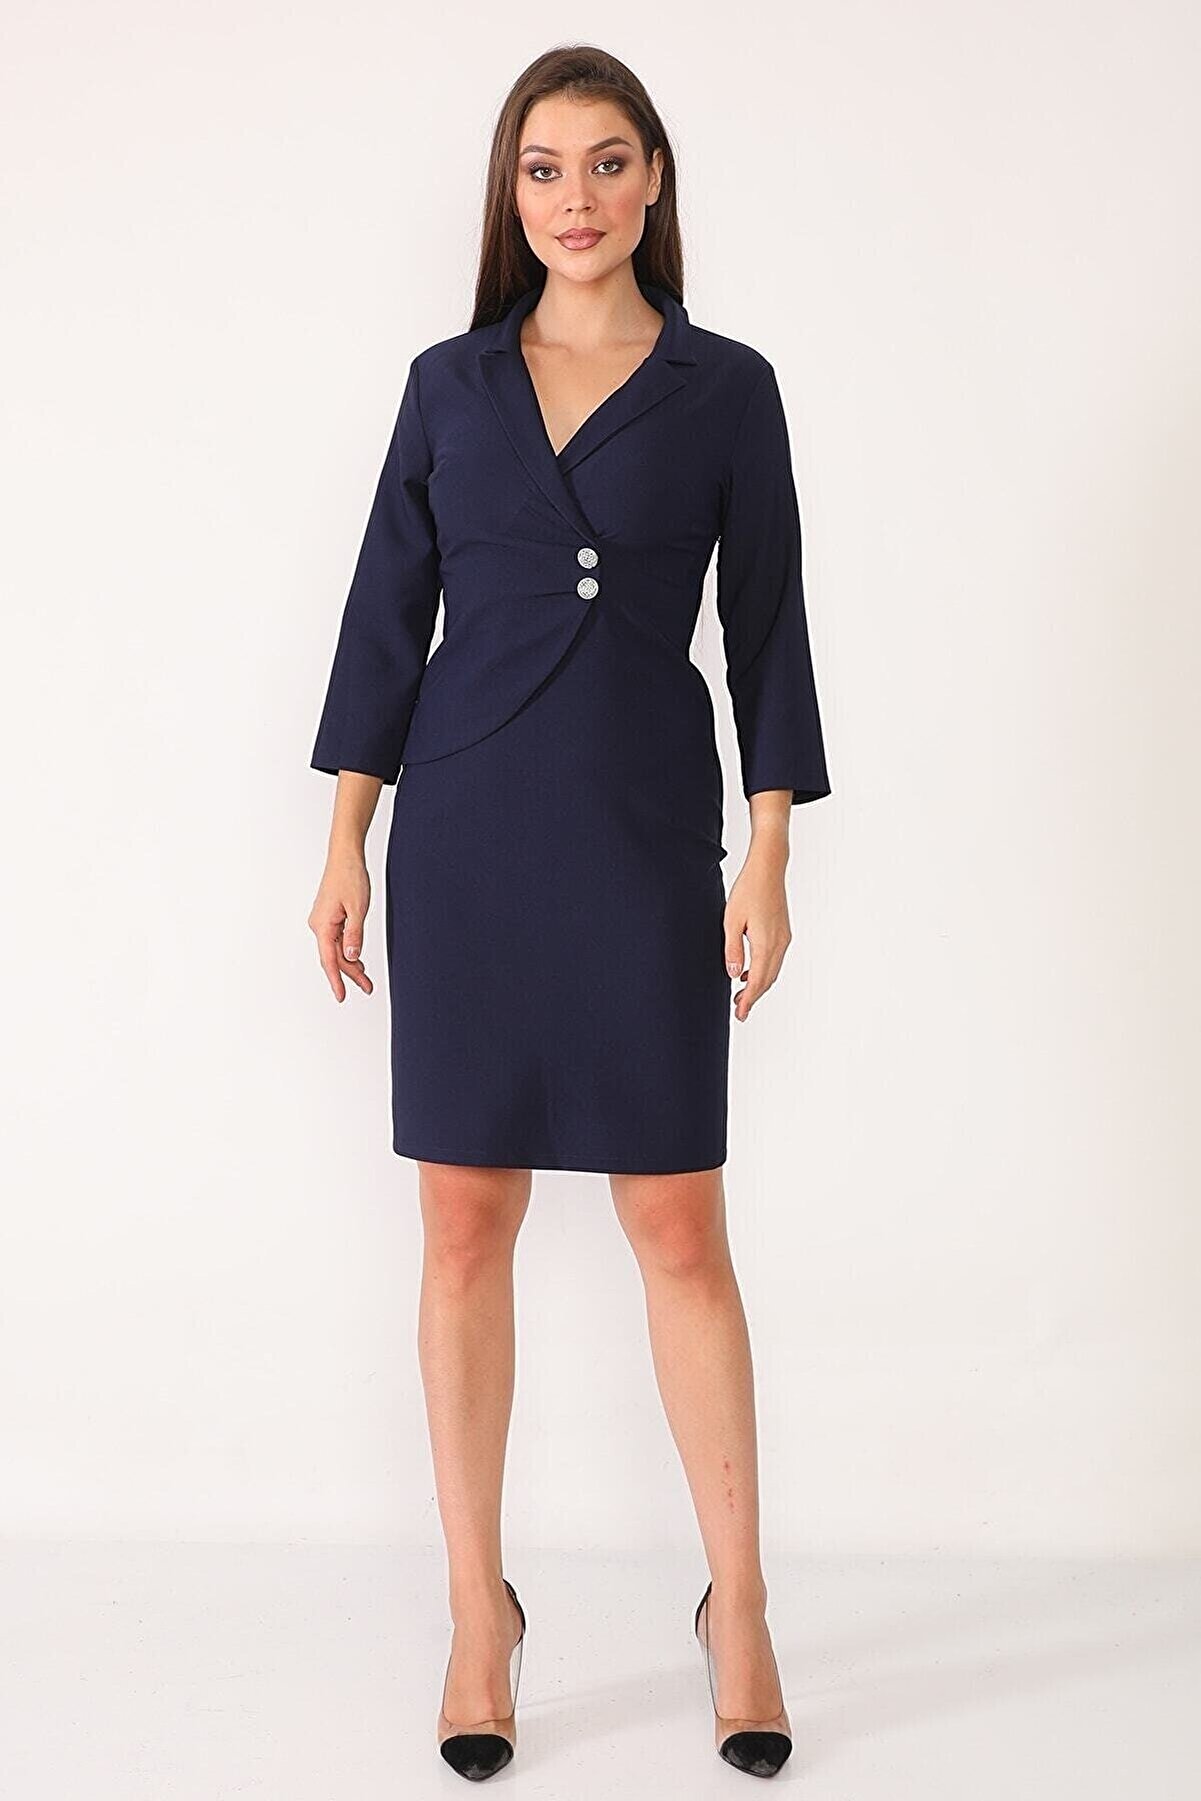 Element's Kadın Lacivert Kruvaze Yaka Ve Ön Kısmı Düğme Detaylı Ofis Elbise